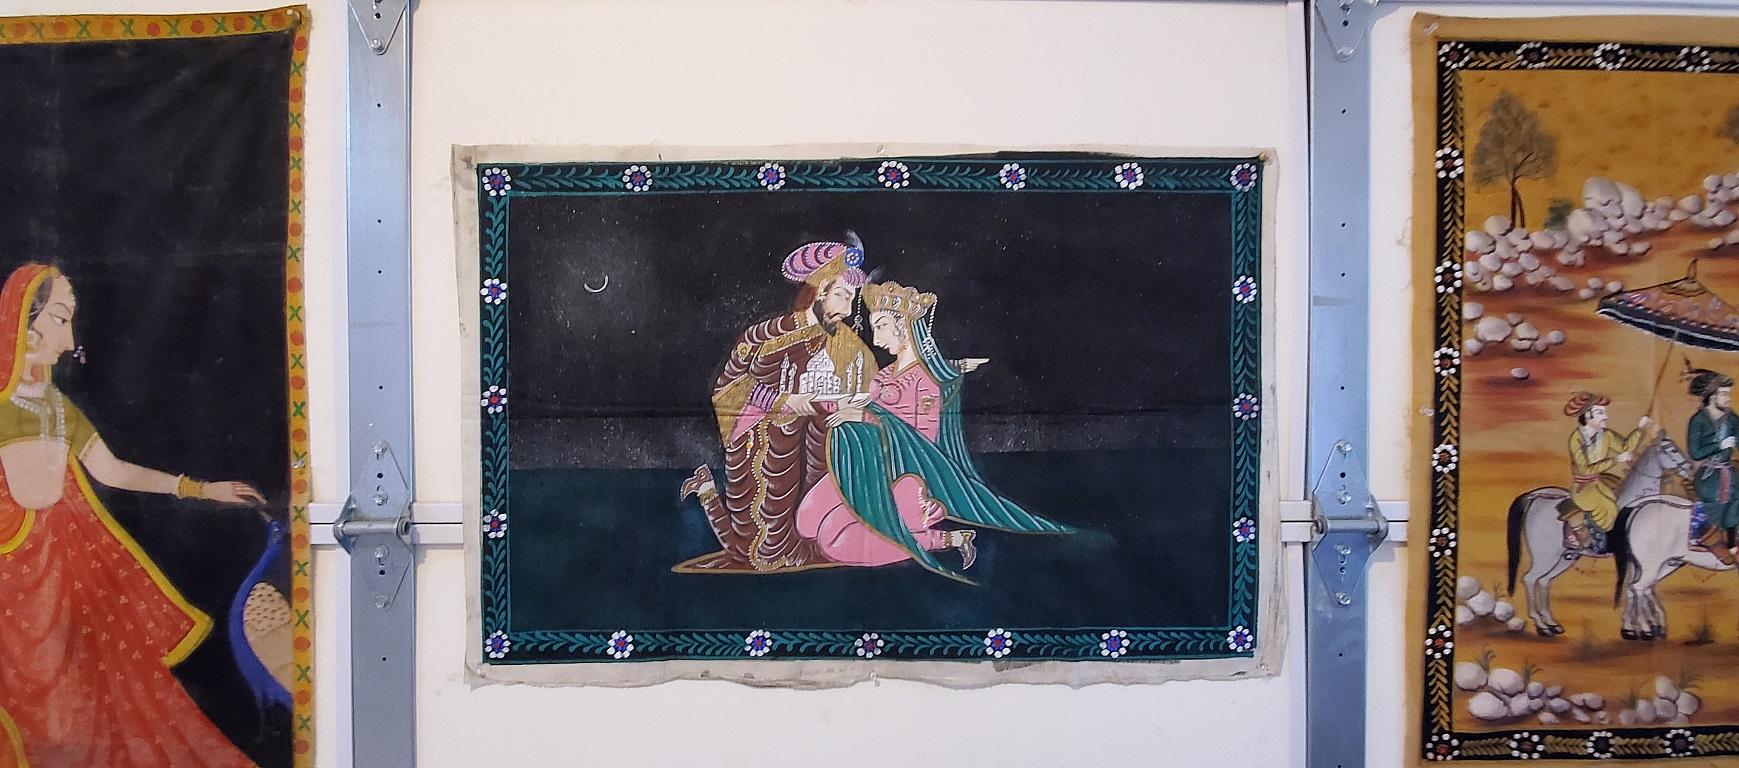 Nous vous présentons une magnifique et iconique tapisserie indienne vintage de Shah Jahan et Mumtaz Mahal.

Nous pensons qu'elle date du début du 20e siècle, vers 1920.

Fabriqué en coton et peint à la main avec une image de Shah Jahan et Mumtaz